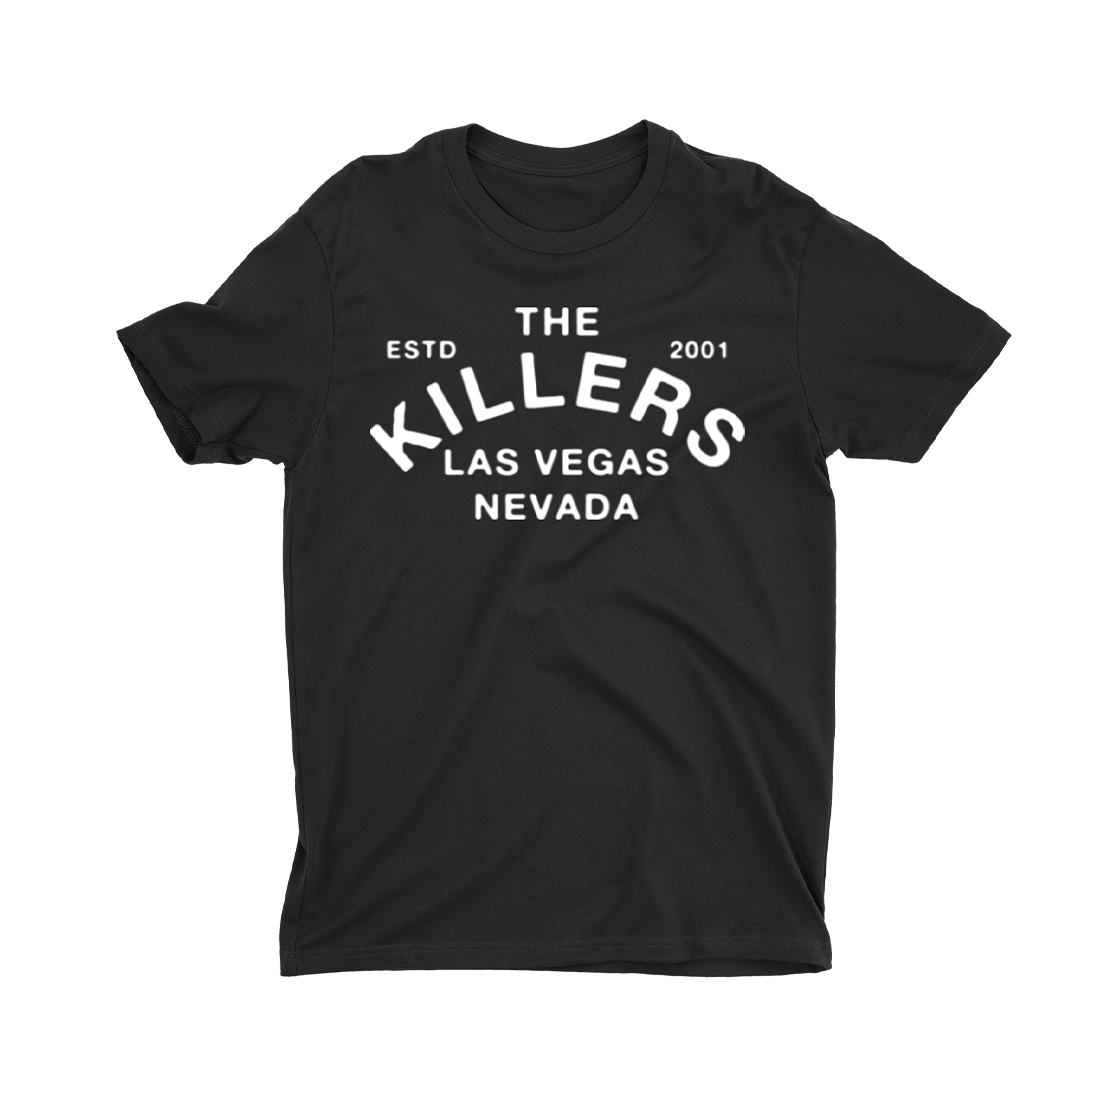 The Killers - Est 2001 T-Shirt